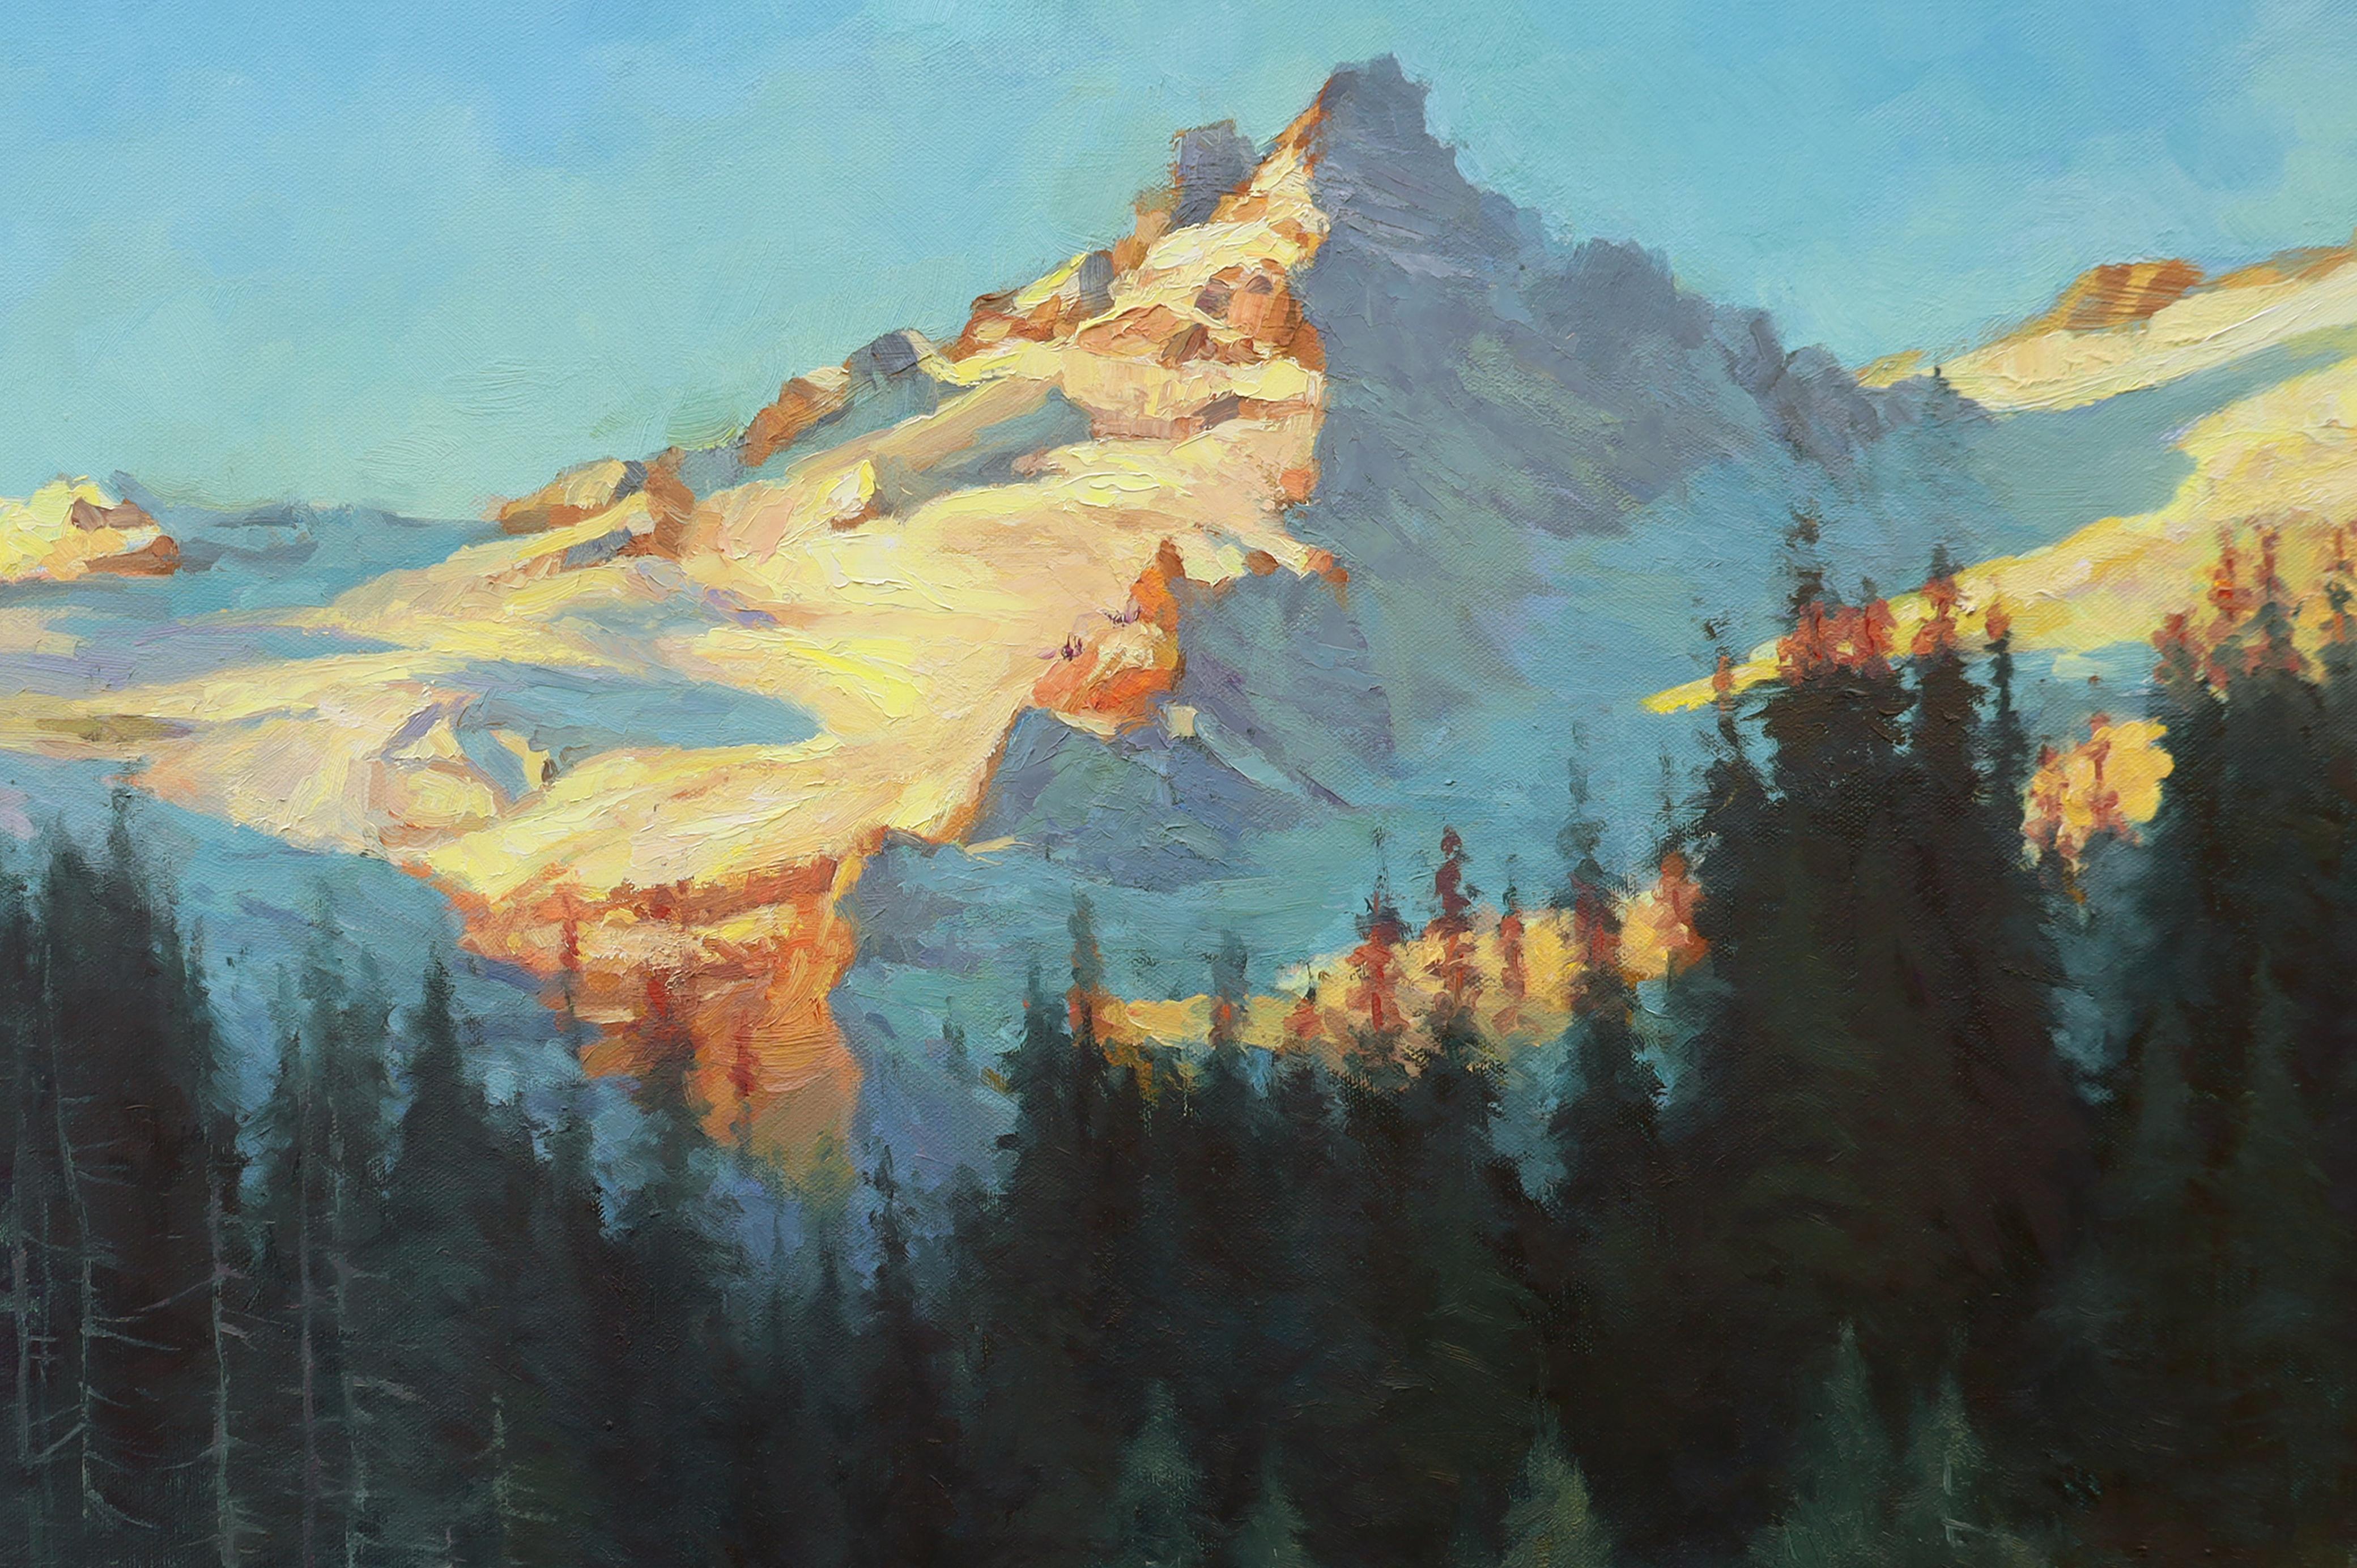 <p>Kommentare des KünstlersEin schneebedeckter Berg glänzt, wenn die Sonne auf seine felsige Form trifft, und bietet einen auffälligen Kontrast zu einem schattigen, tiefen Wald an seinem Fuß.<br> Das Spiel von Licht und Schatten verleiht der